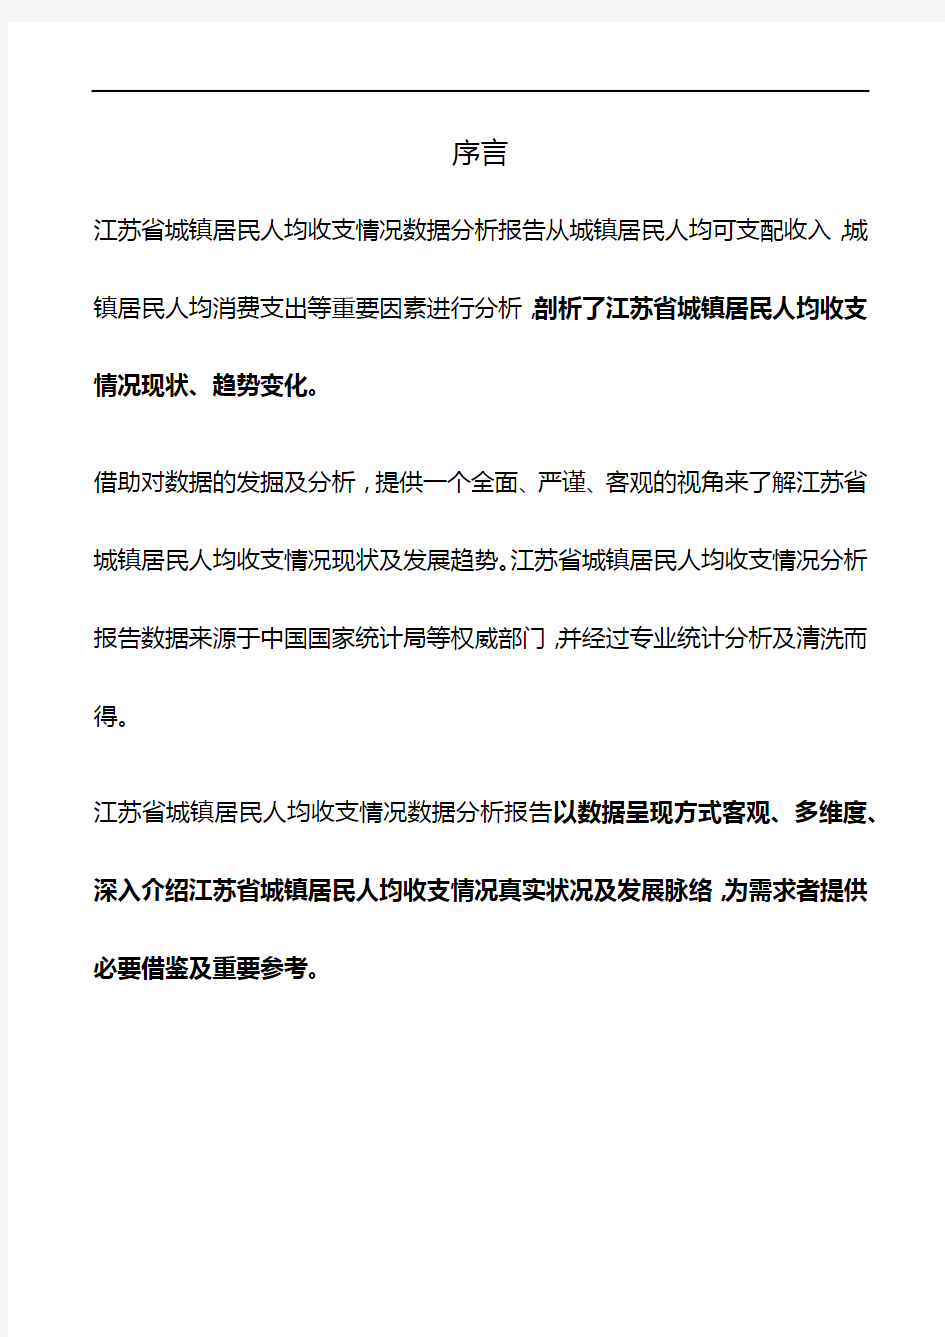 江苏省城镇居民人均收支情况3年数据分析报告2019版